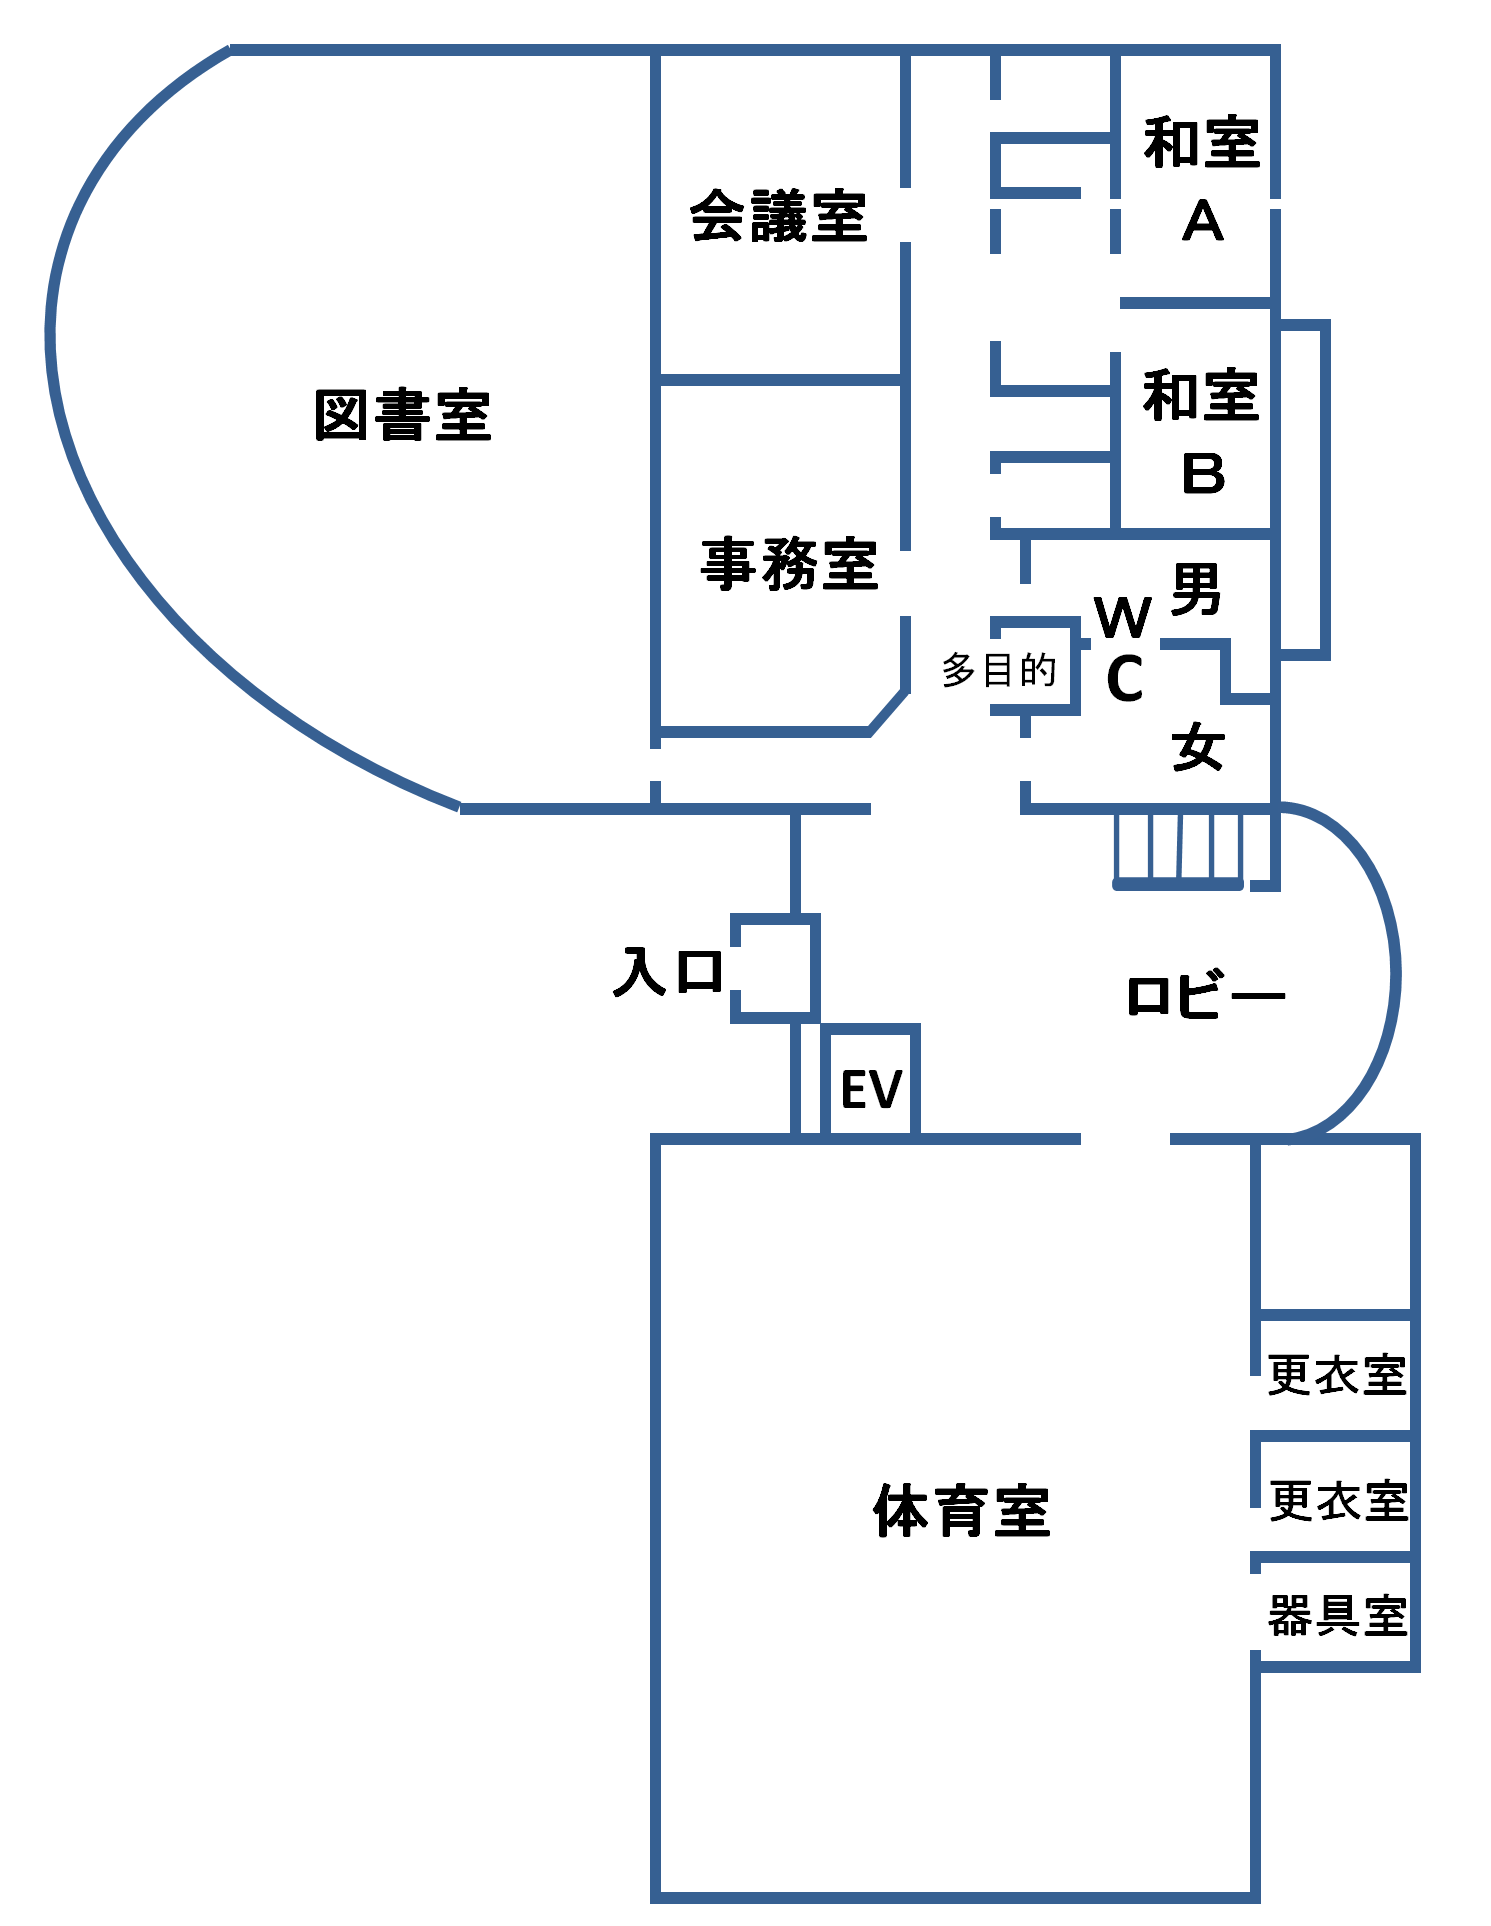 図：1階間取り図